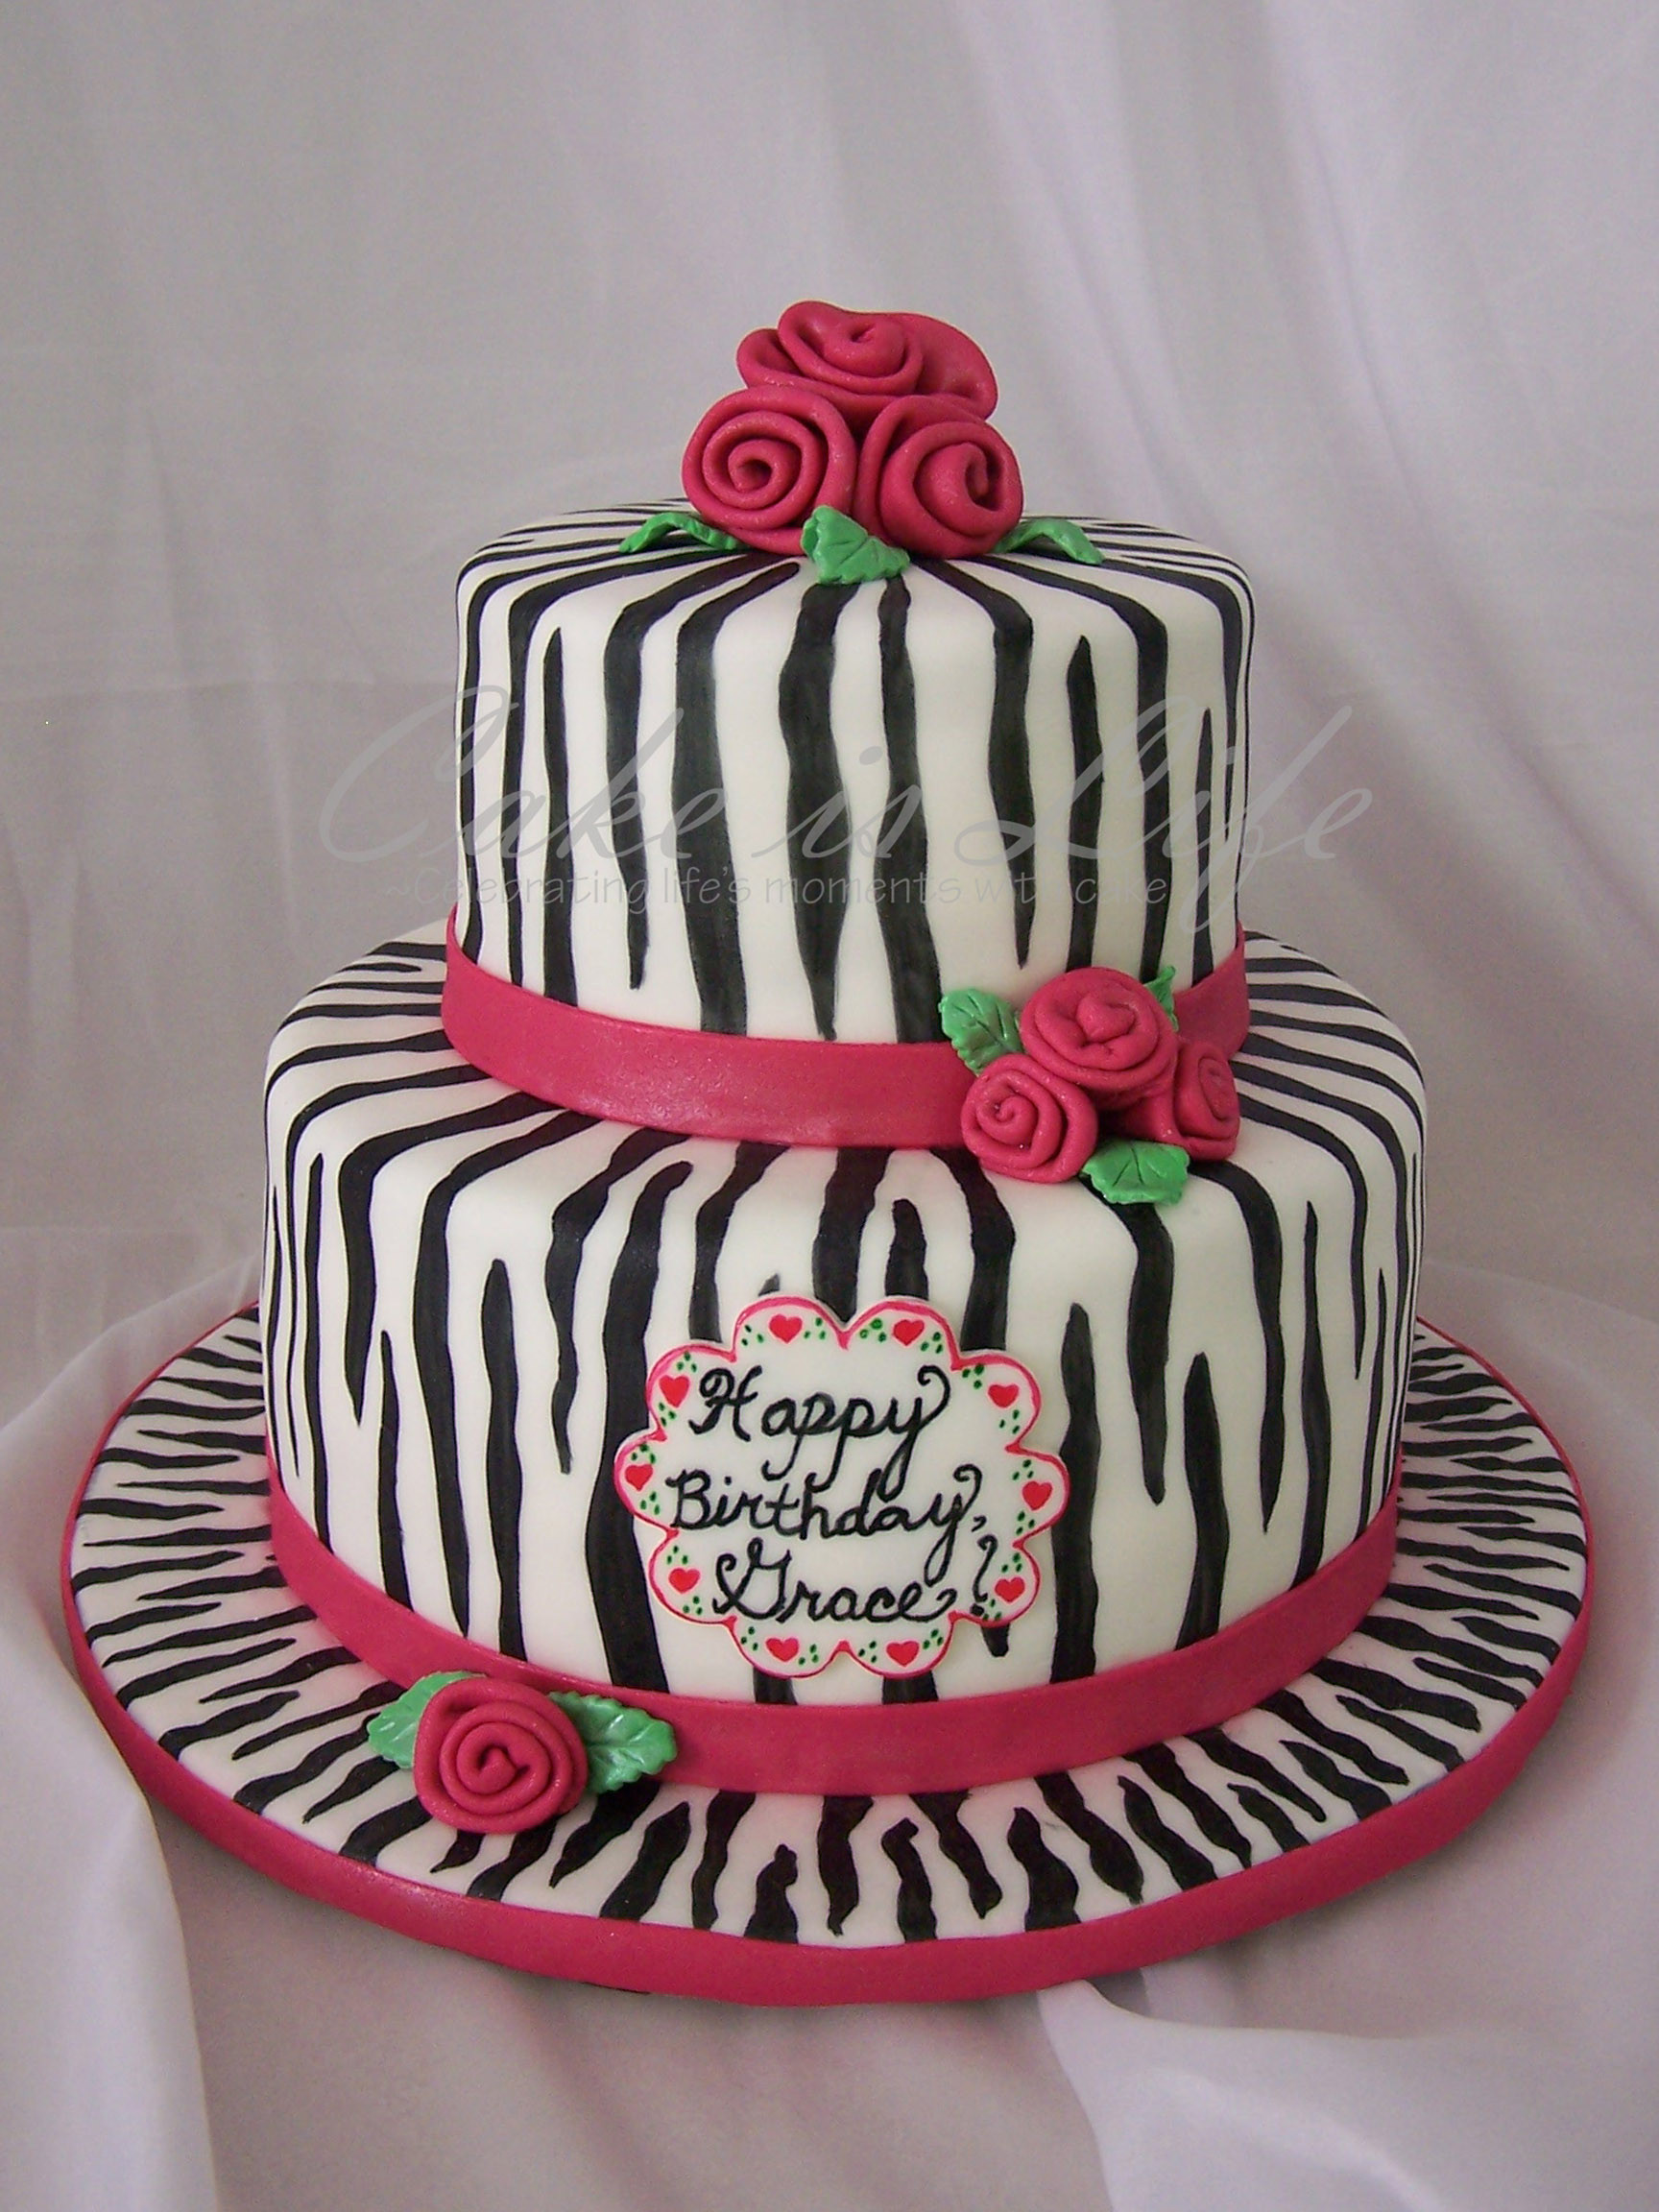 Zebra Print Birthday Cake
 Girly Zebra Striped Birthday Cake